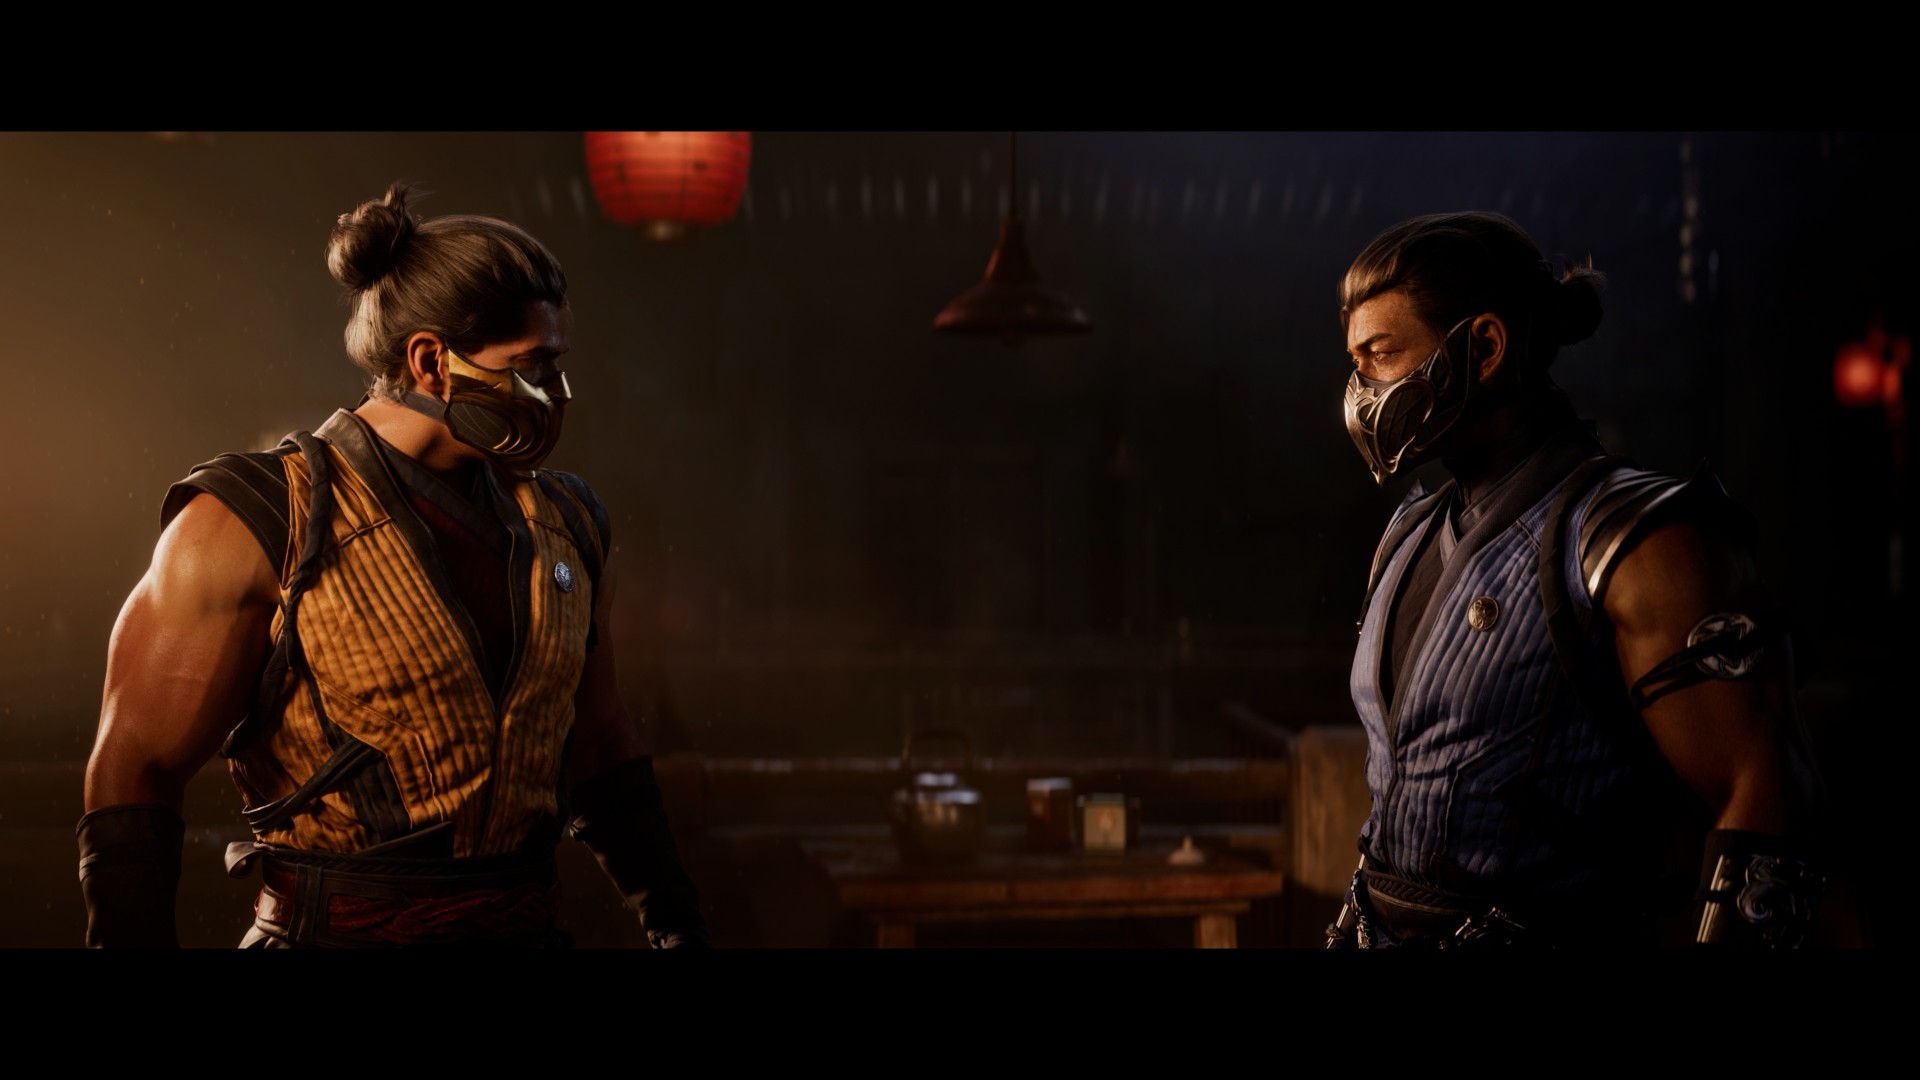 Review  Mortal Kombat 1 - XboxEra